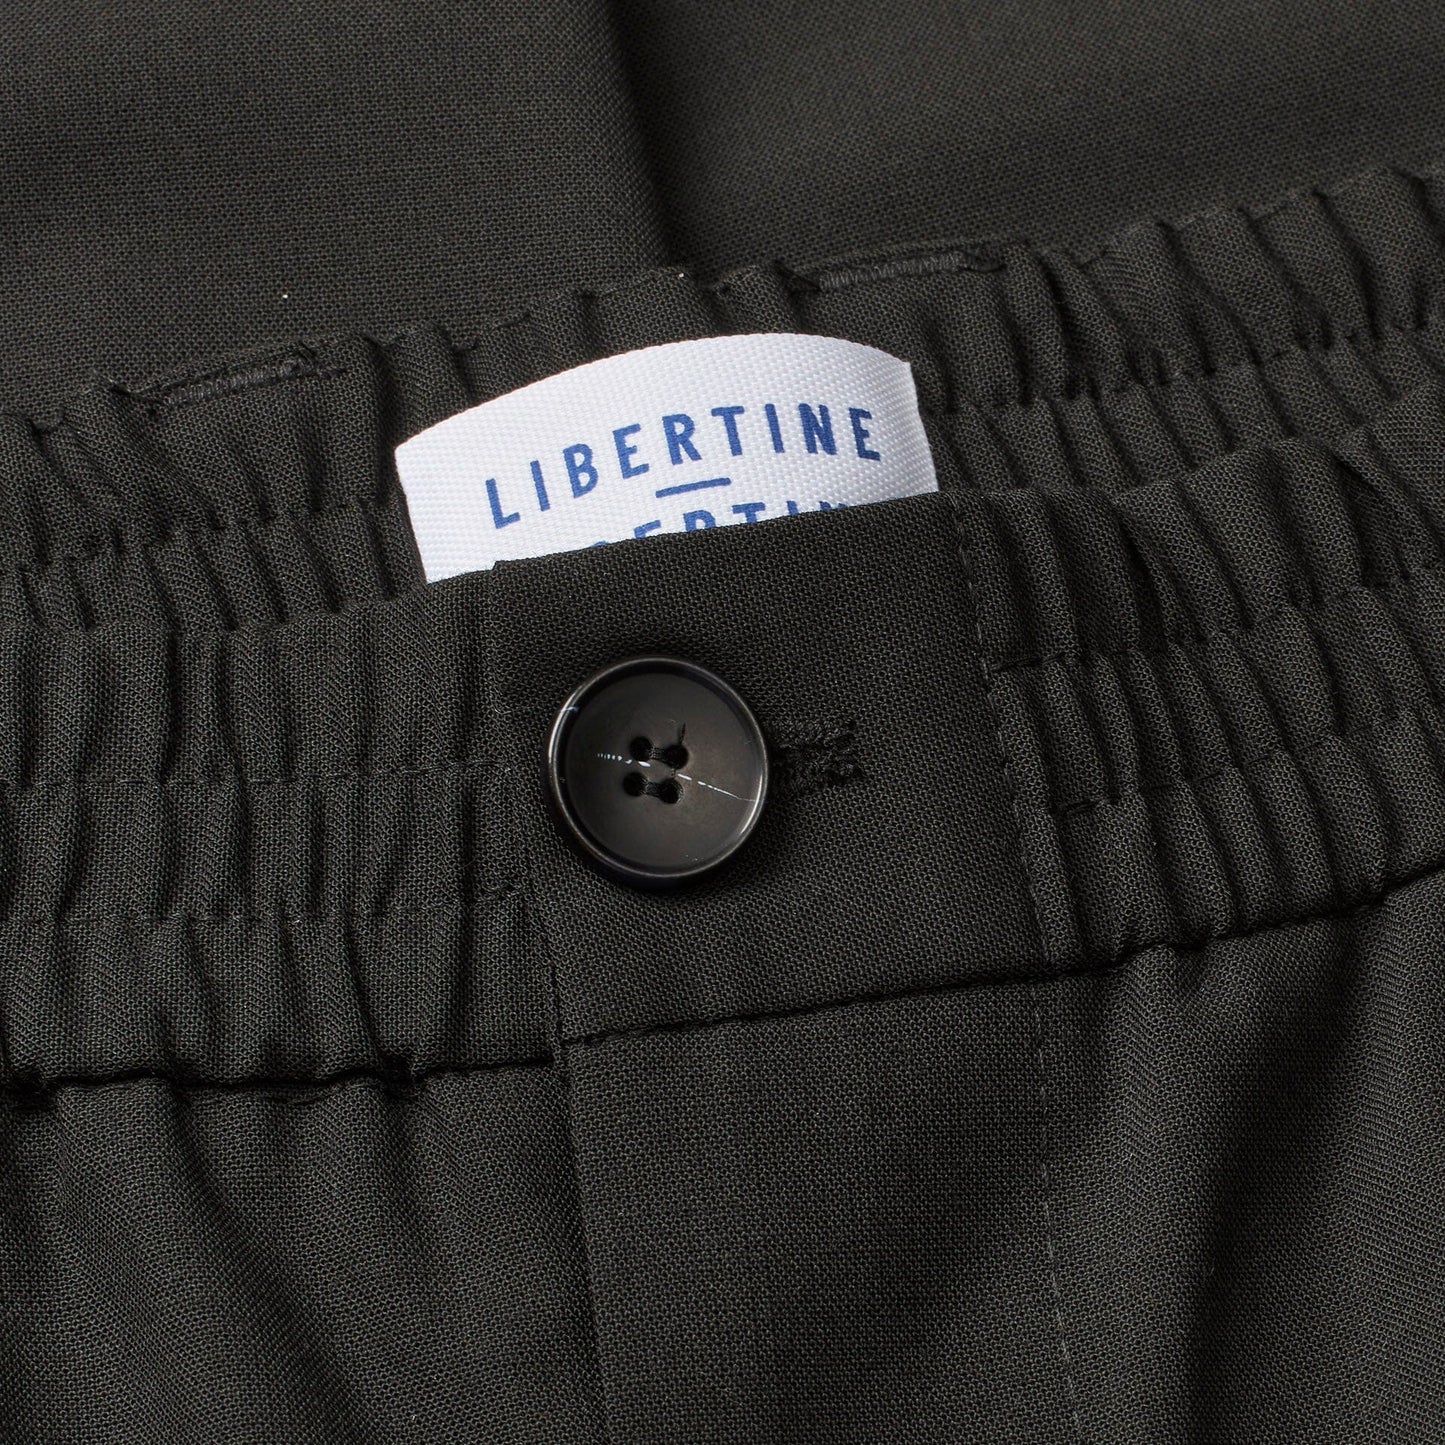 Libertine-Libertine Smoke Pants - Black Pants Libertine-Libertine 